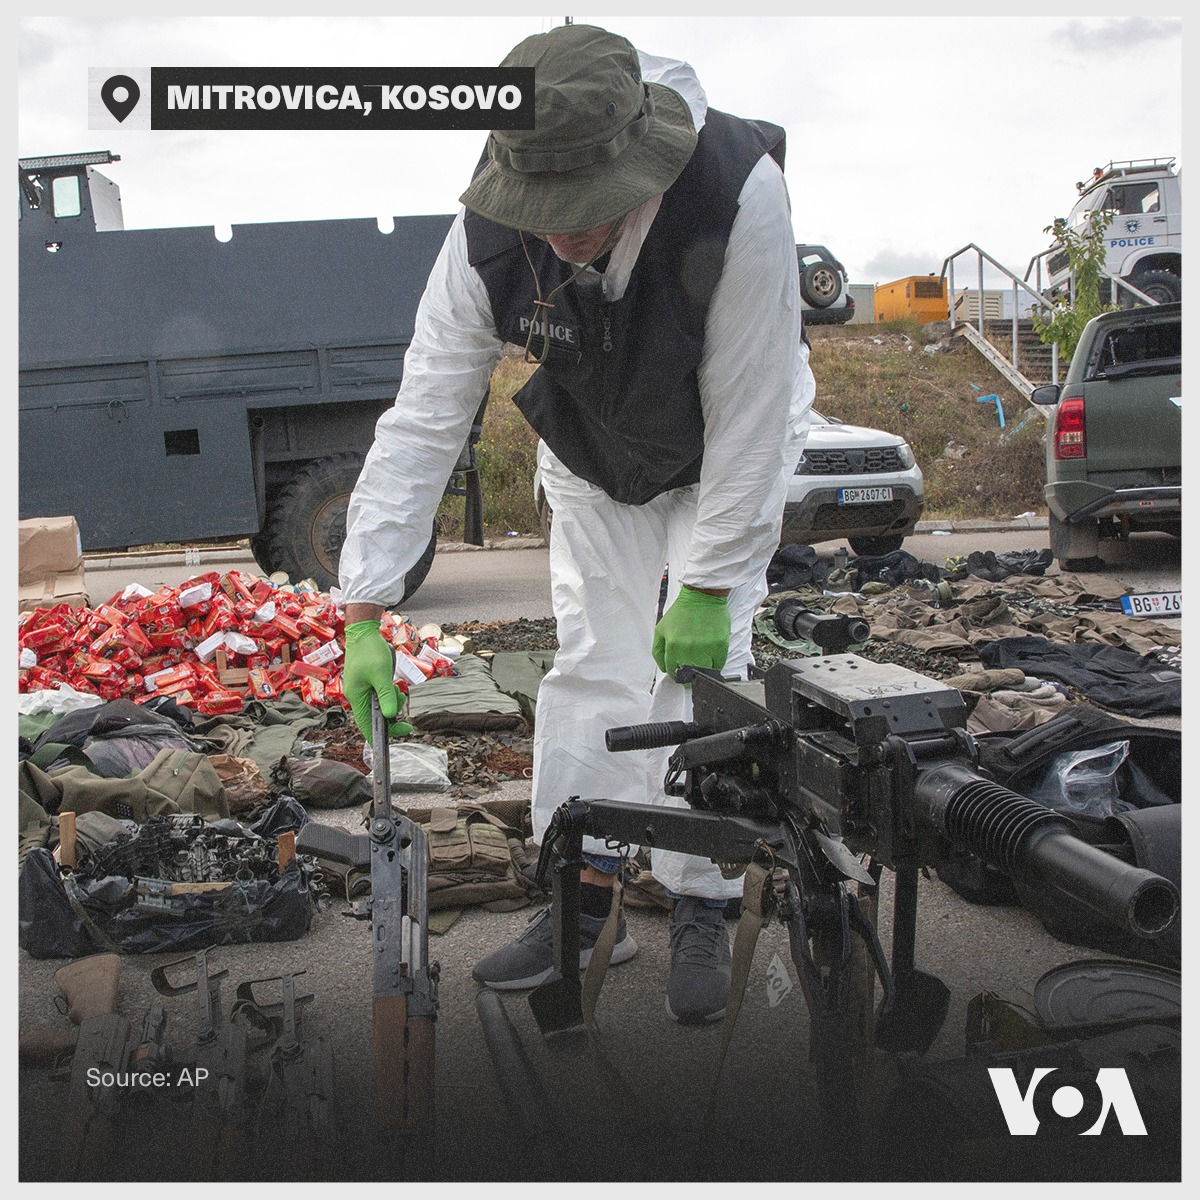 Выставка оружия, изъятого у сербских боевиков (Фото – Voice of America) 